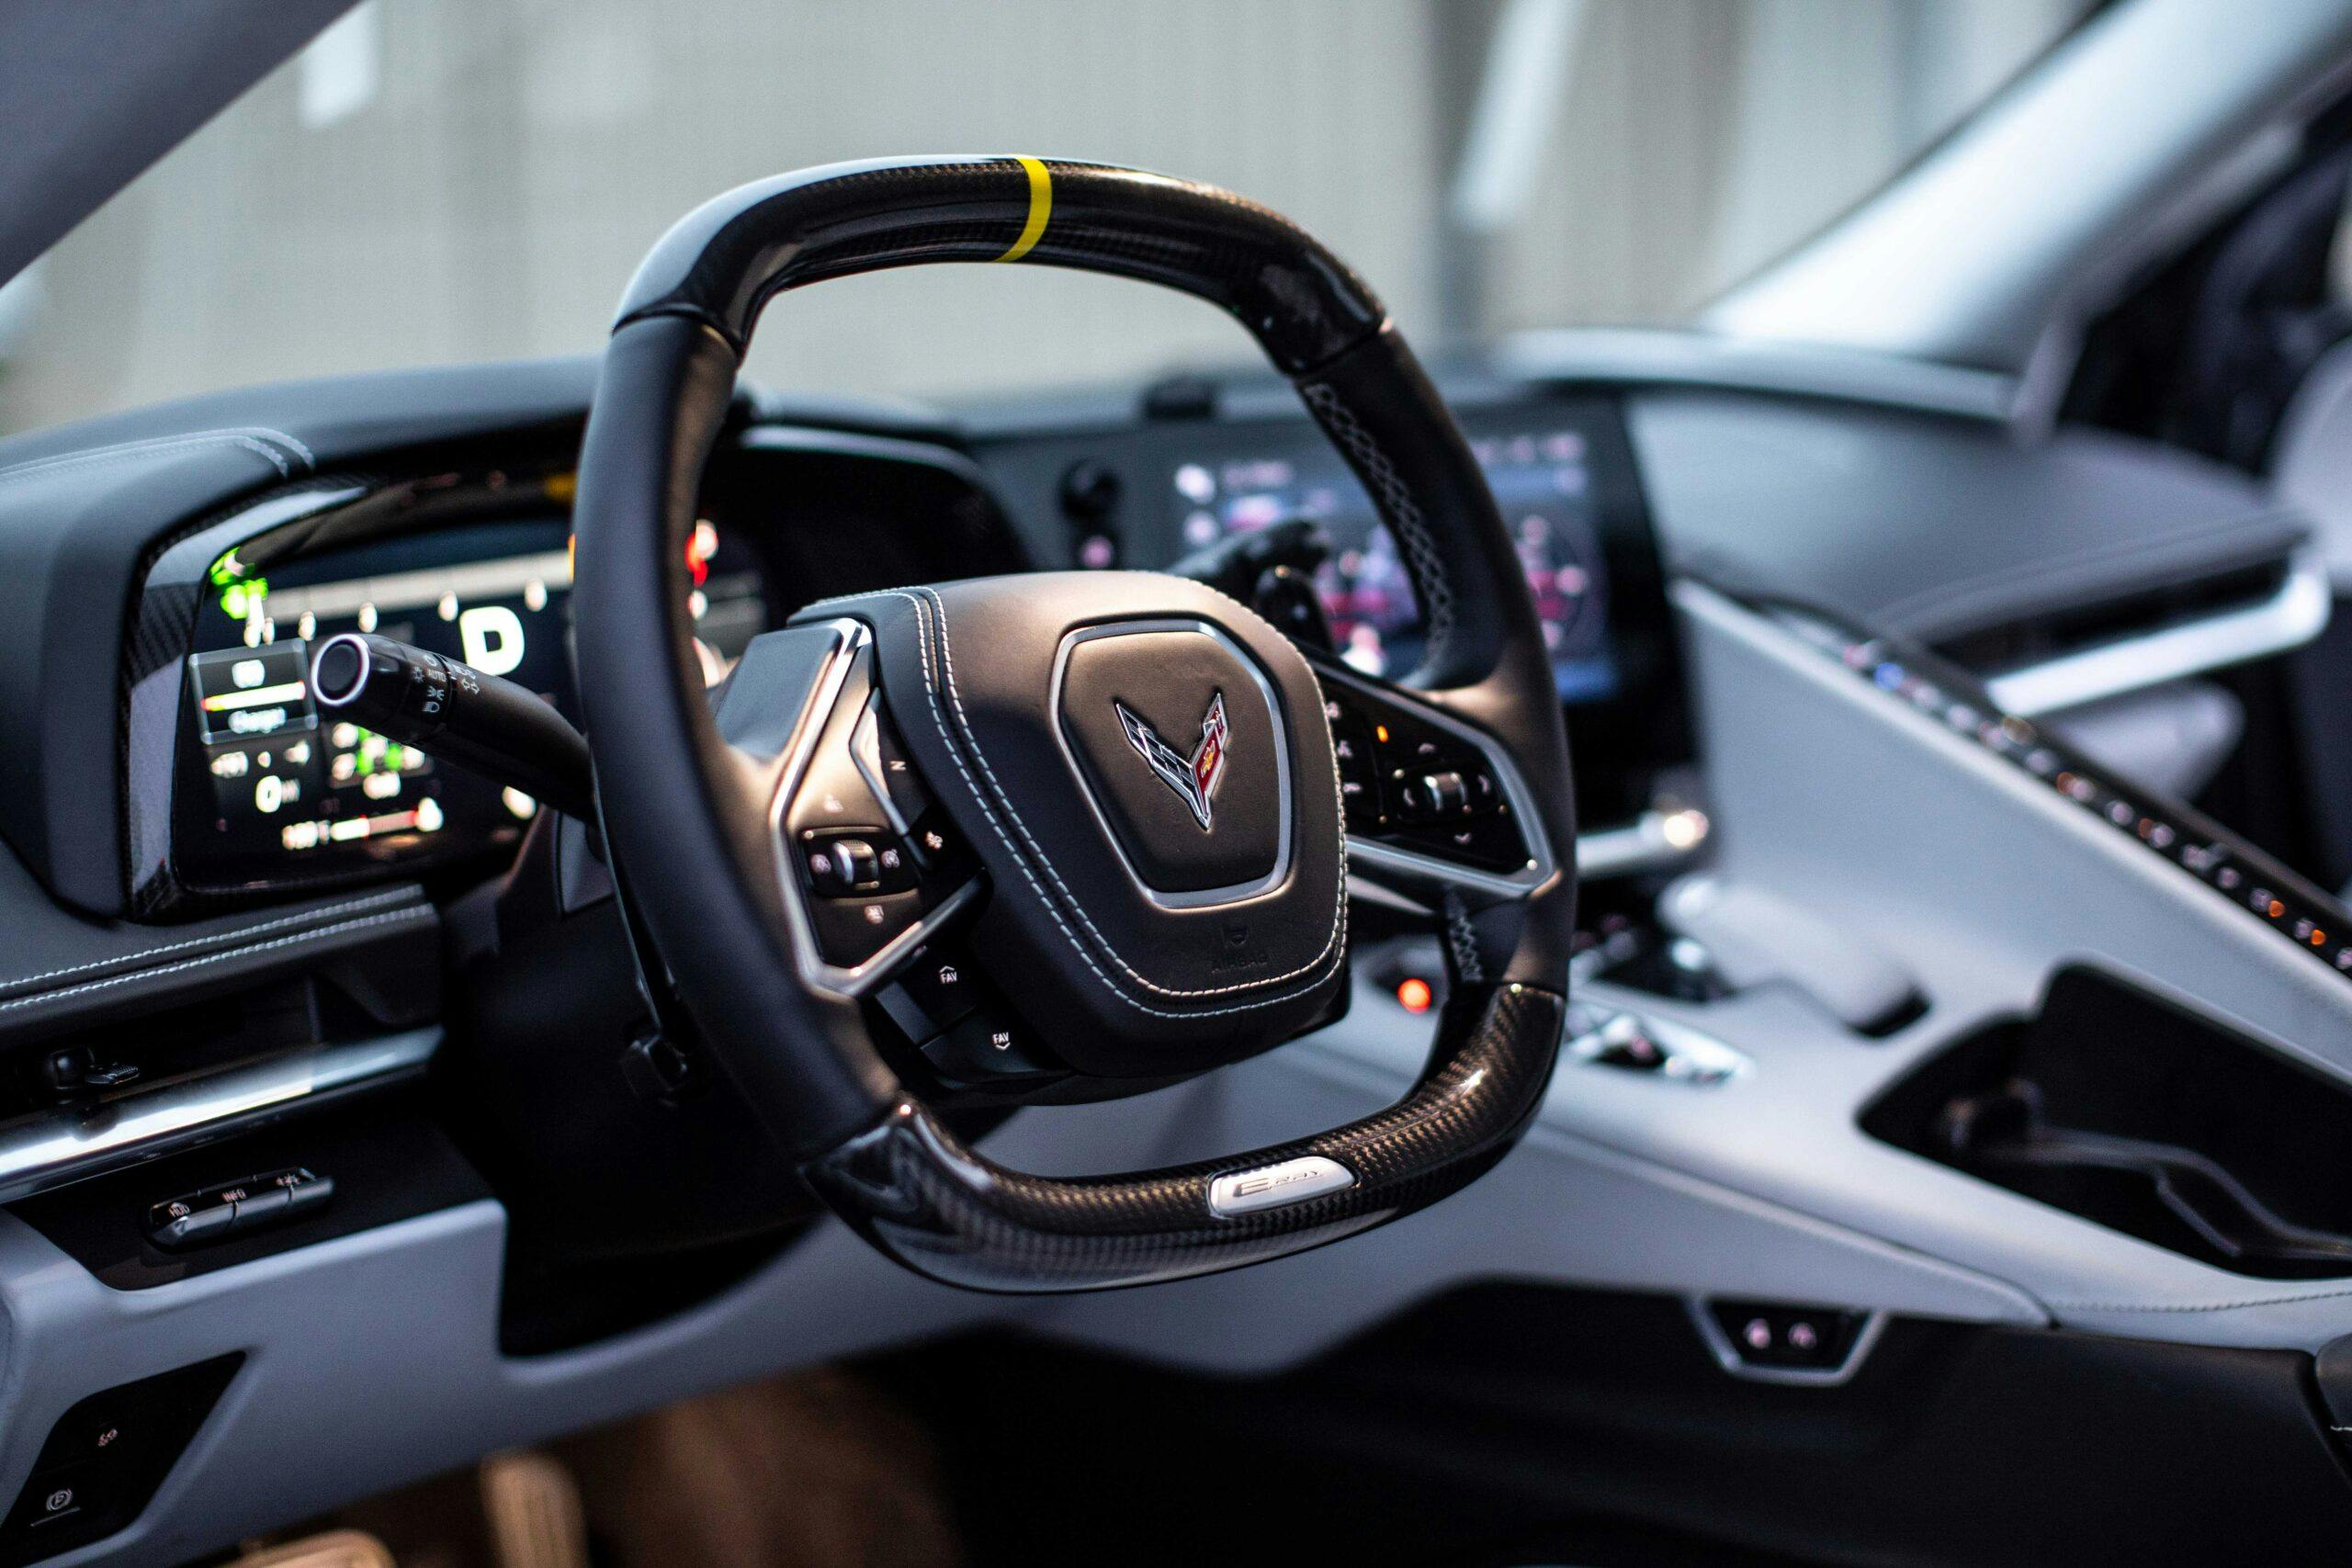 New Corvette E-Ray hybrid interior steering wheel